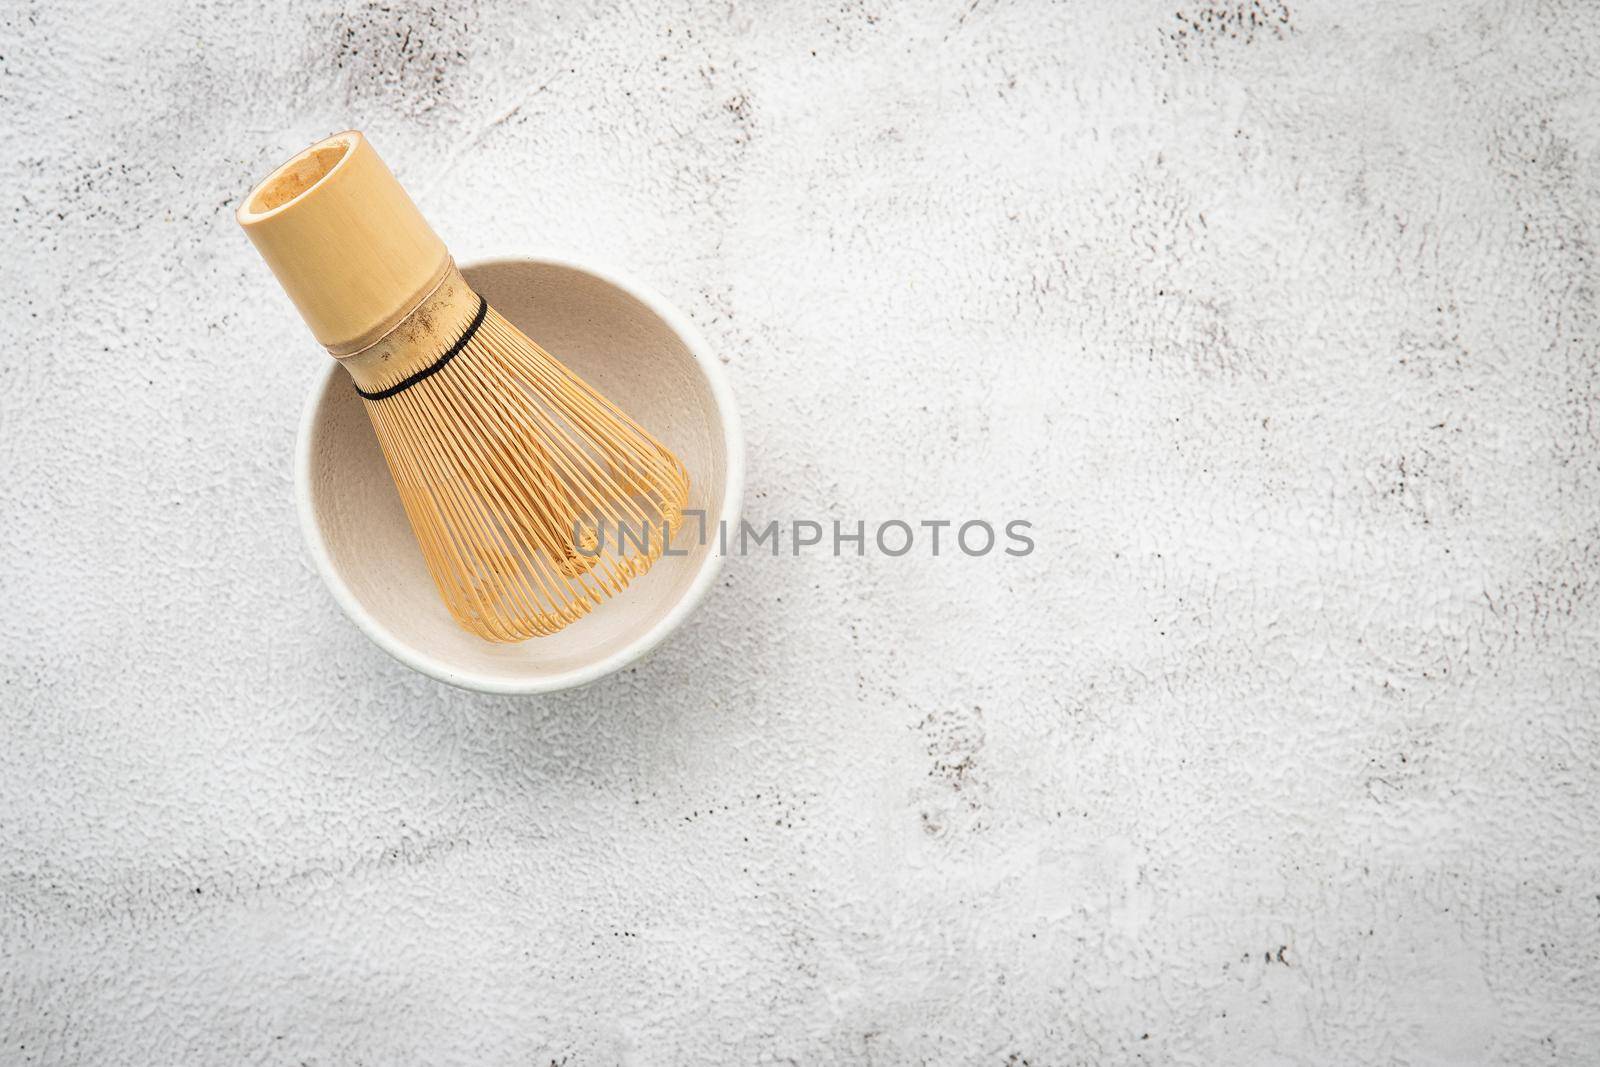 Matcha set bamboo matcha whisk and chashaku tea scoop,matcha ceramic bowl set up on white concrete background. by kerdkanno